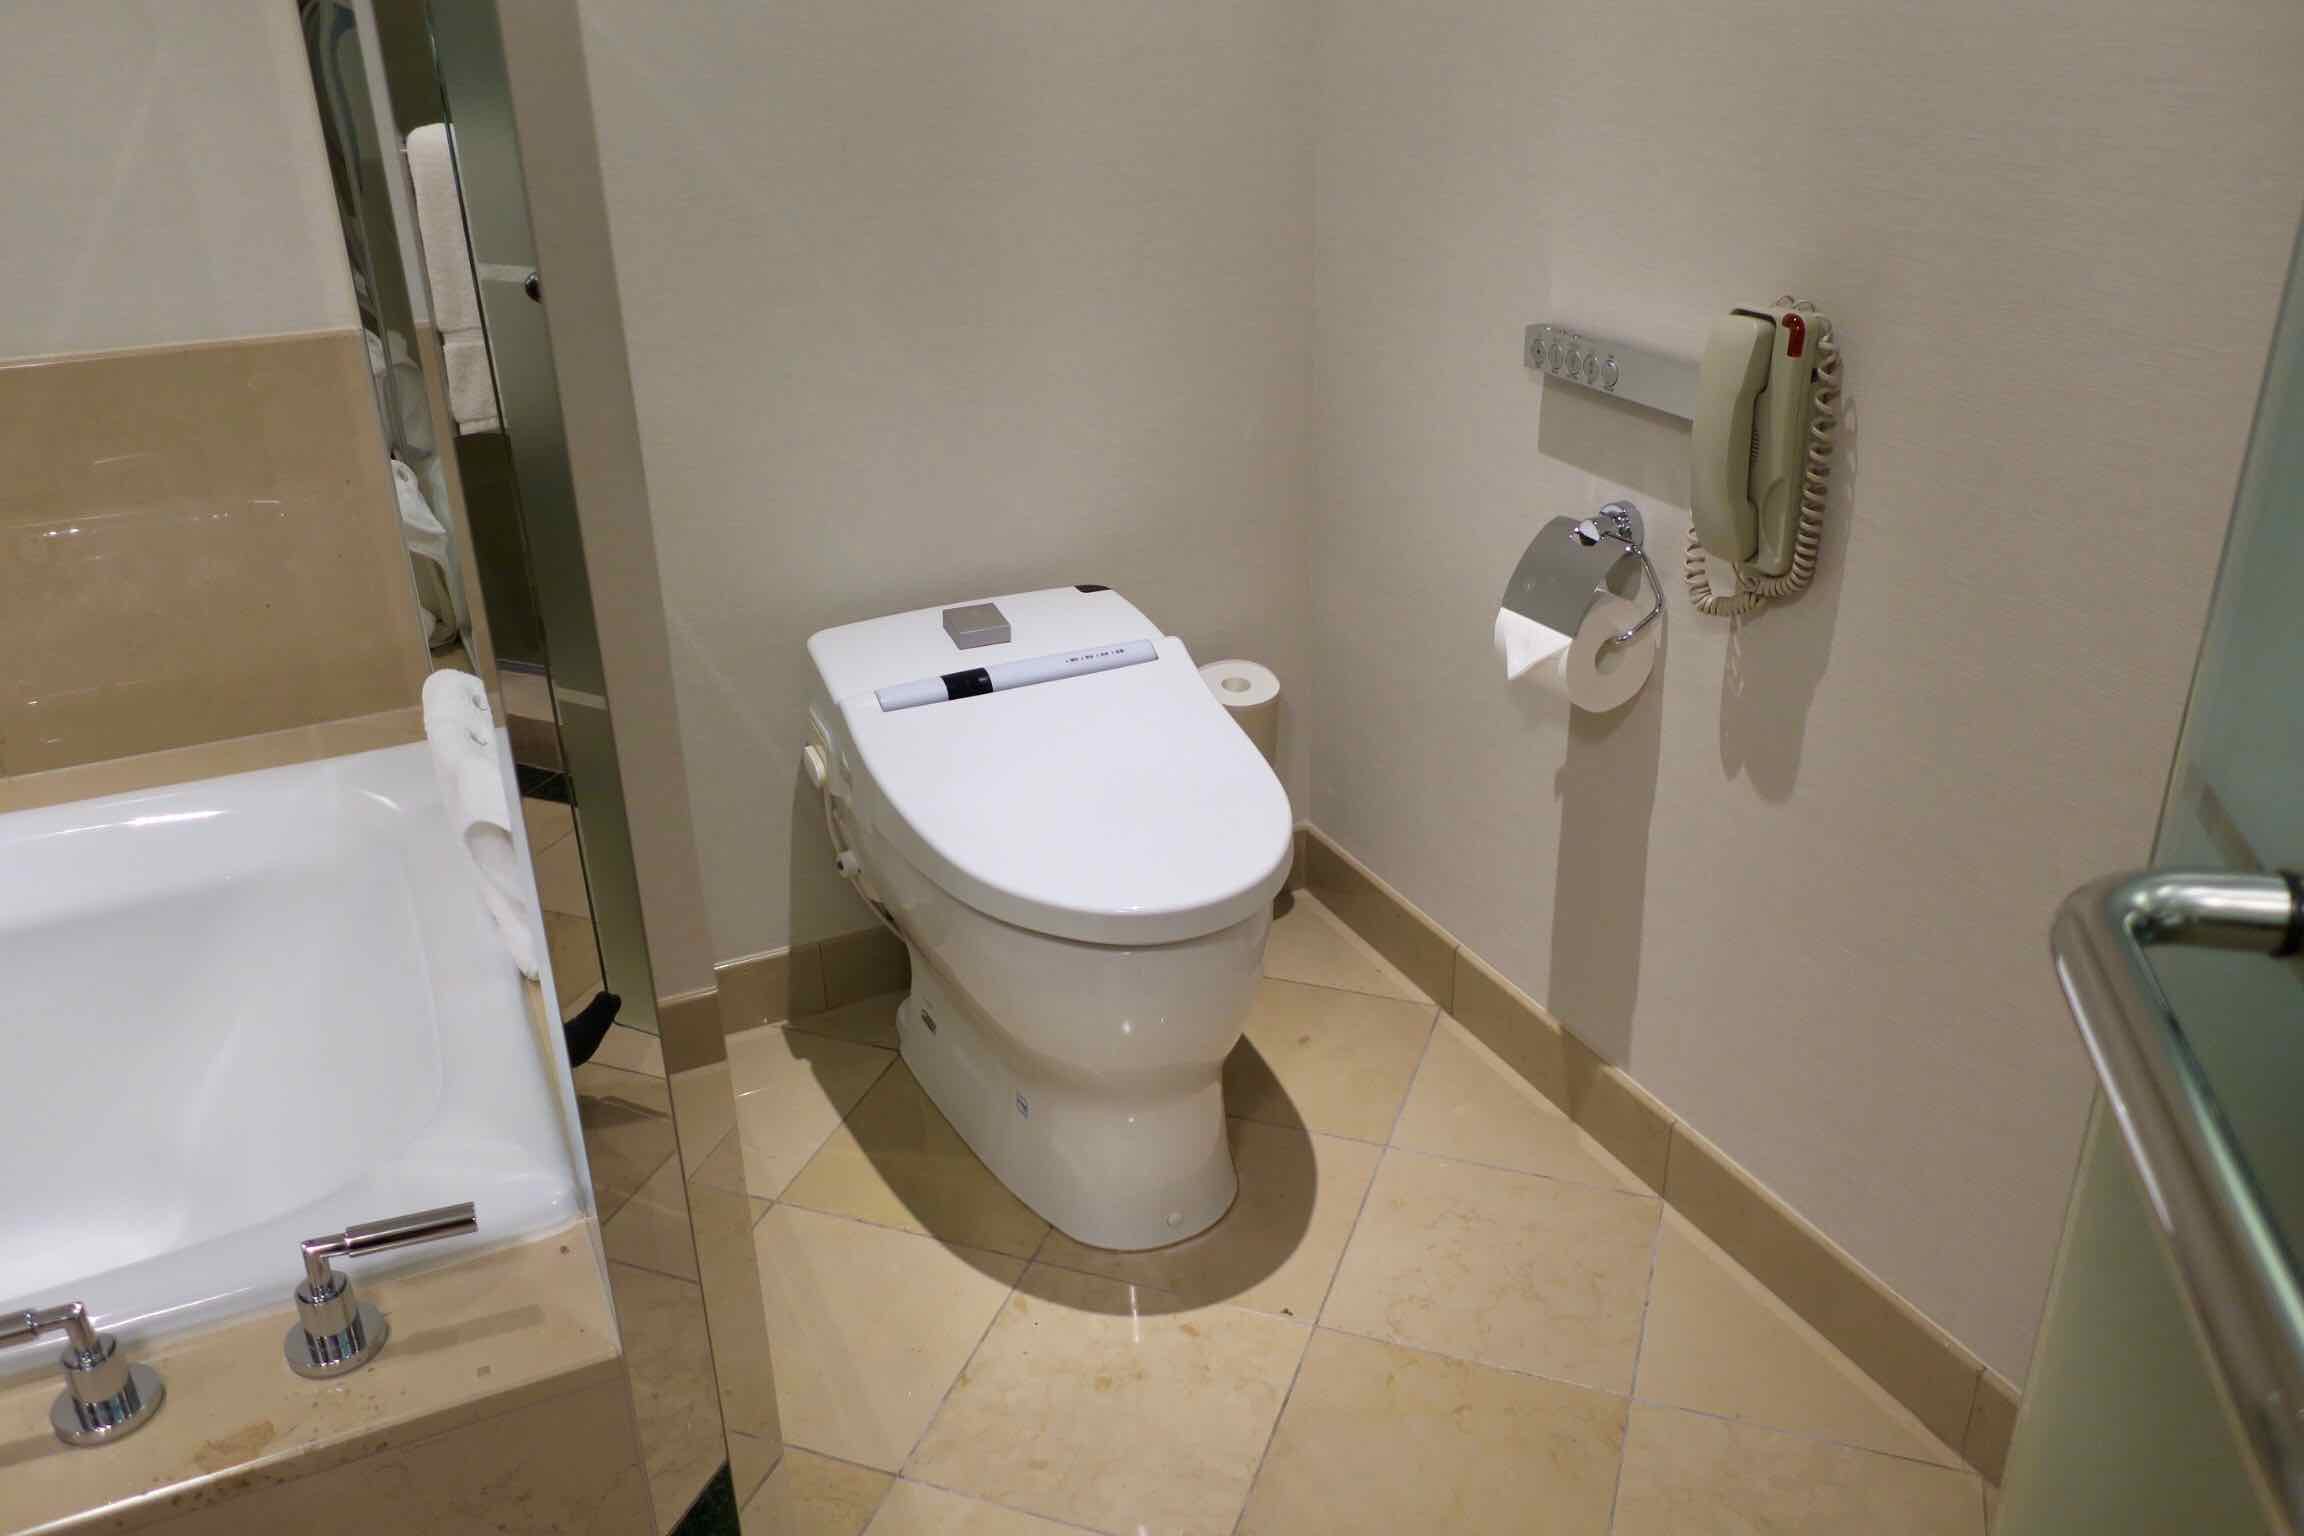 The Ritz-Carlton, Tokyo toilet